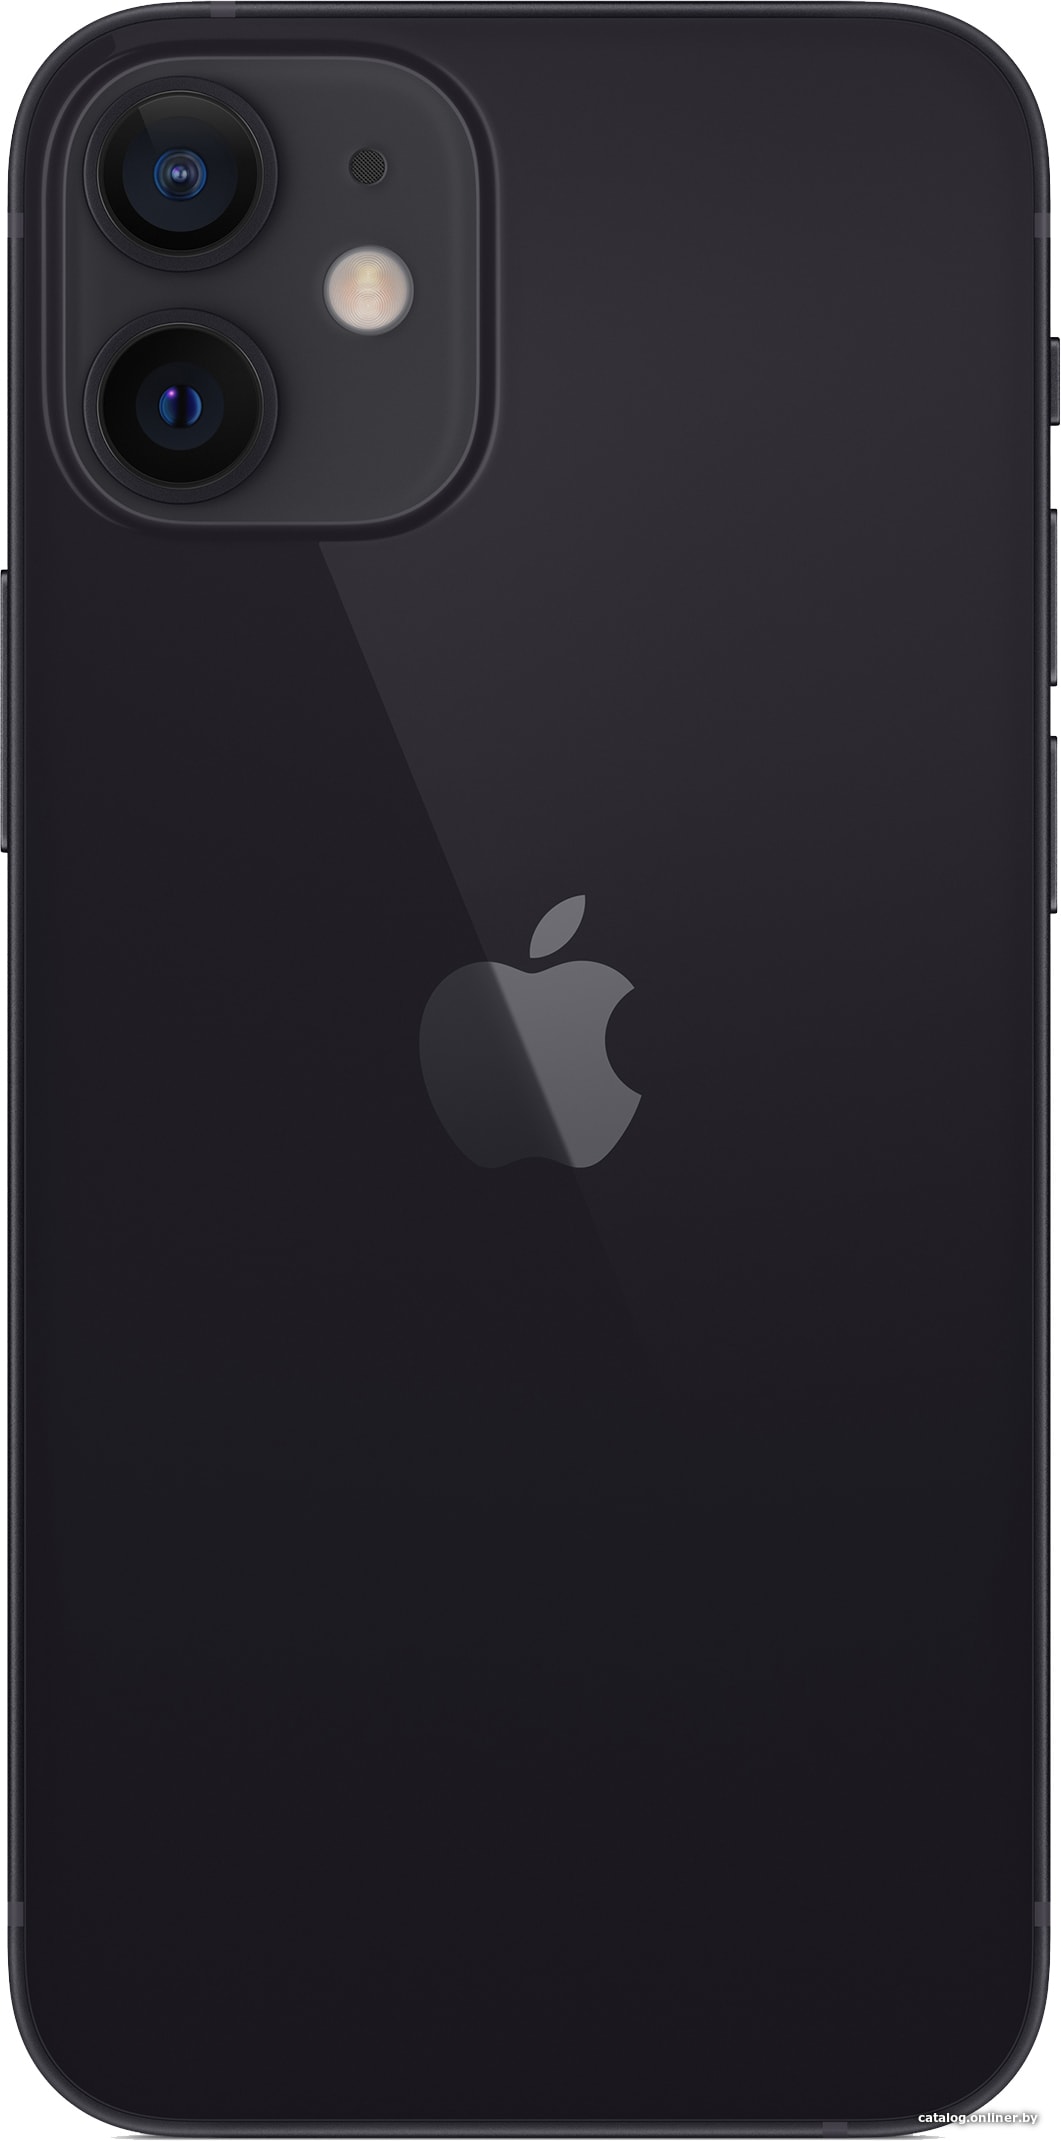 Apple iPhone 12 mini 64GB (черный) смартфон купить в Минске